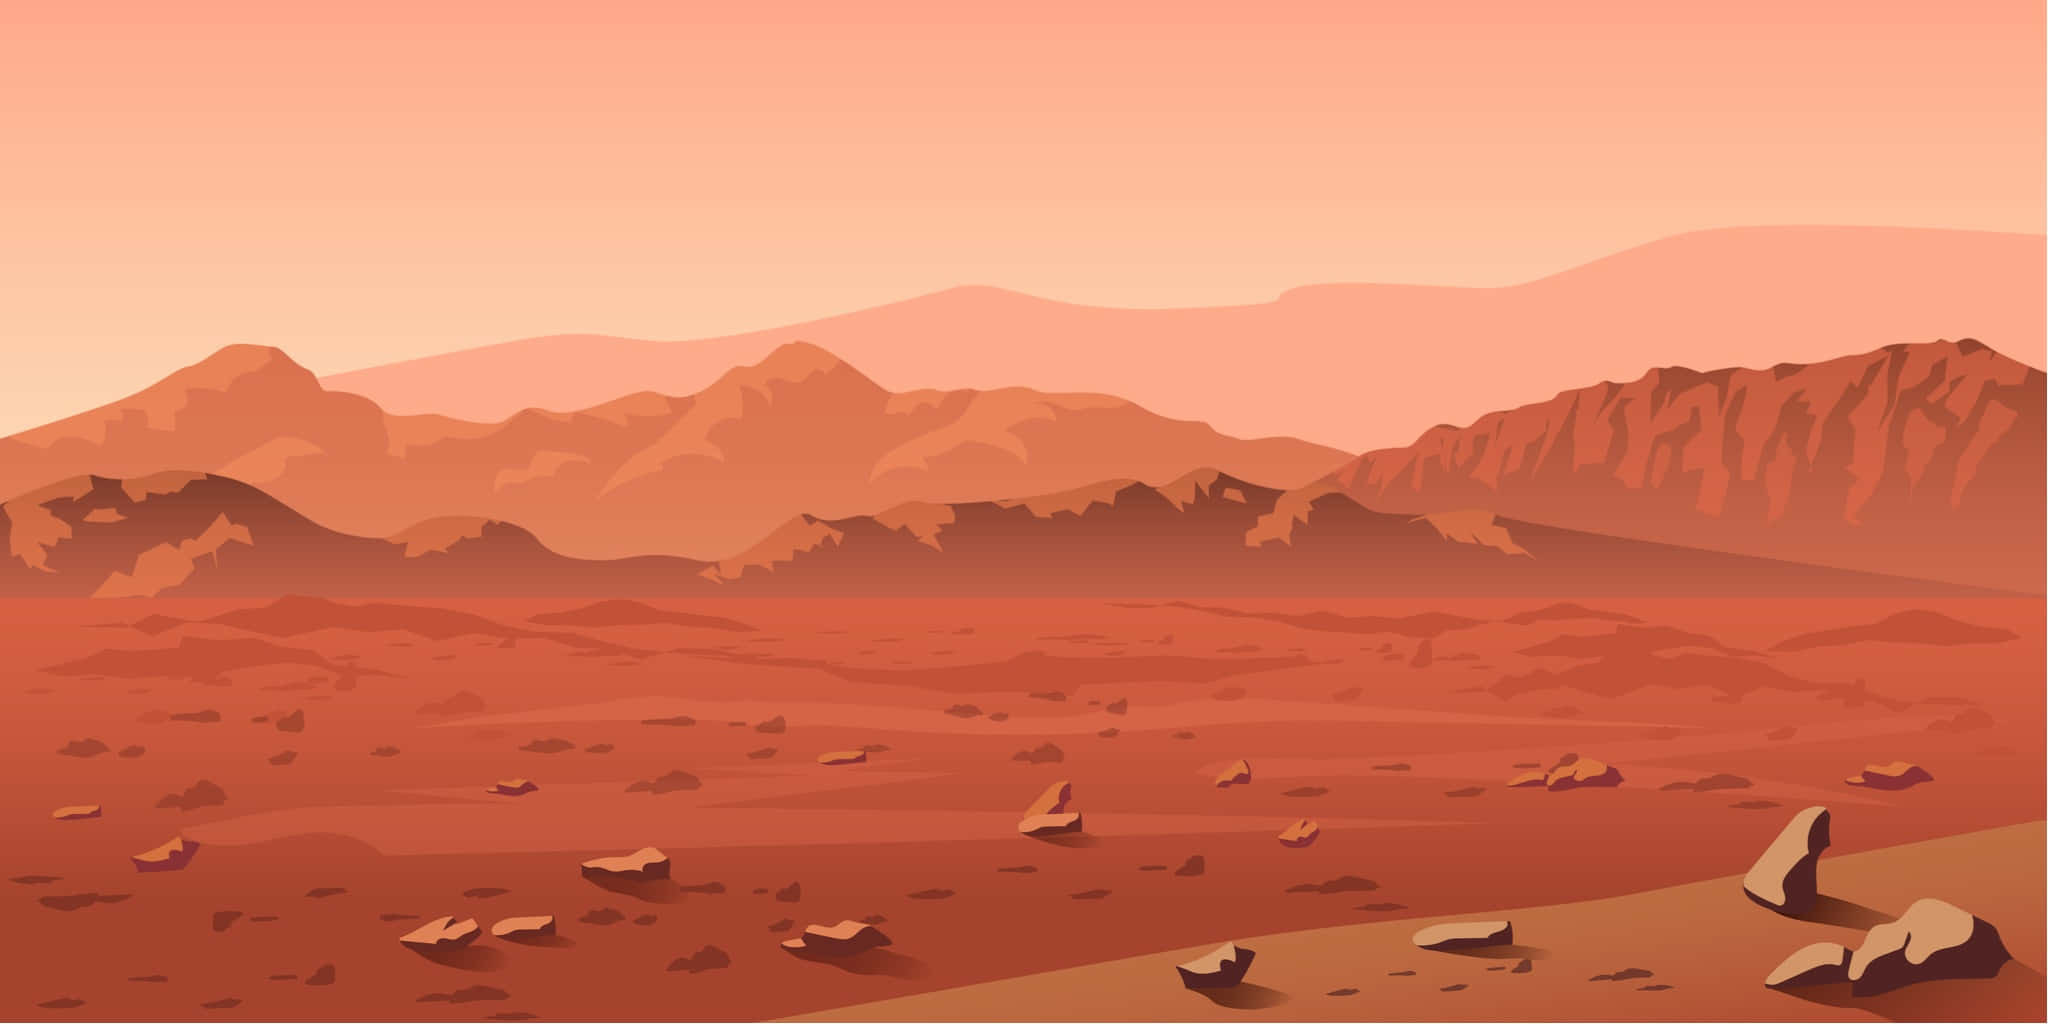 Velkommen til den røde planet - Mars